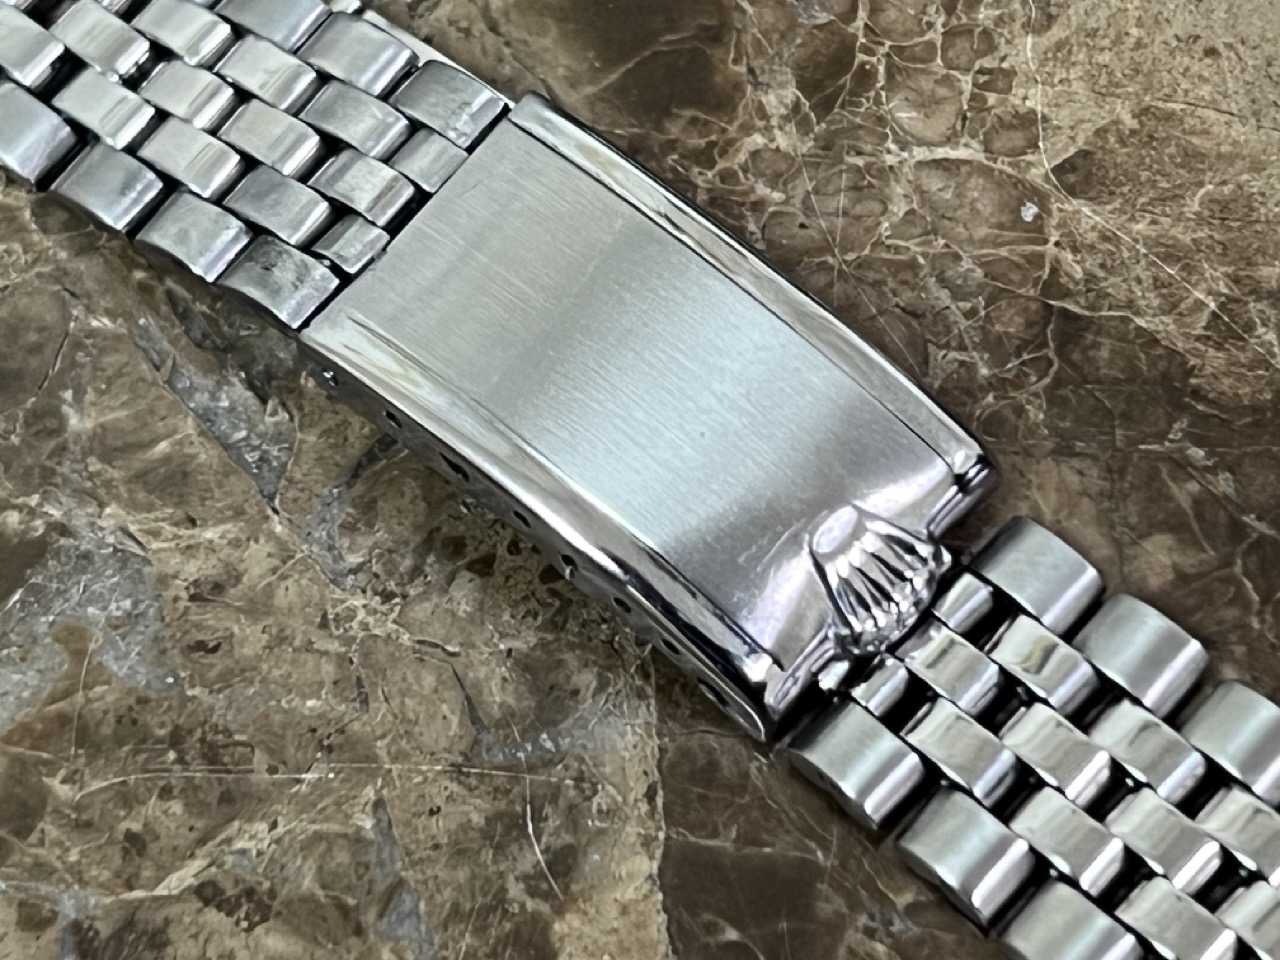 3 Ways to Wear the Rolex Jubilee Bracelet - Bob's Watches